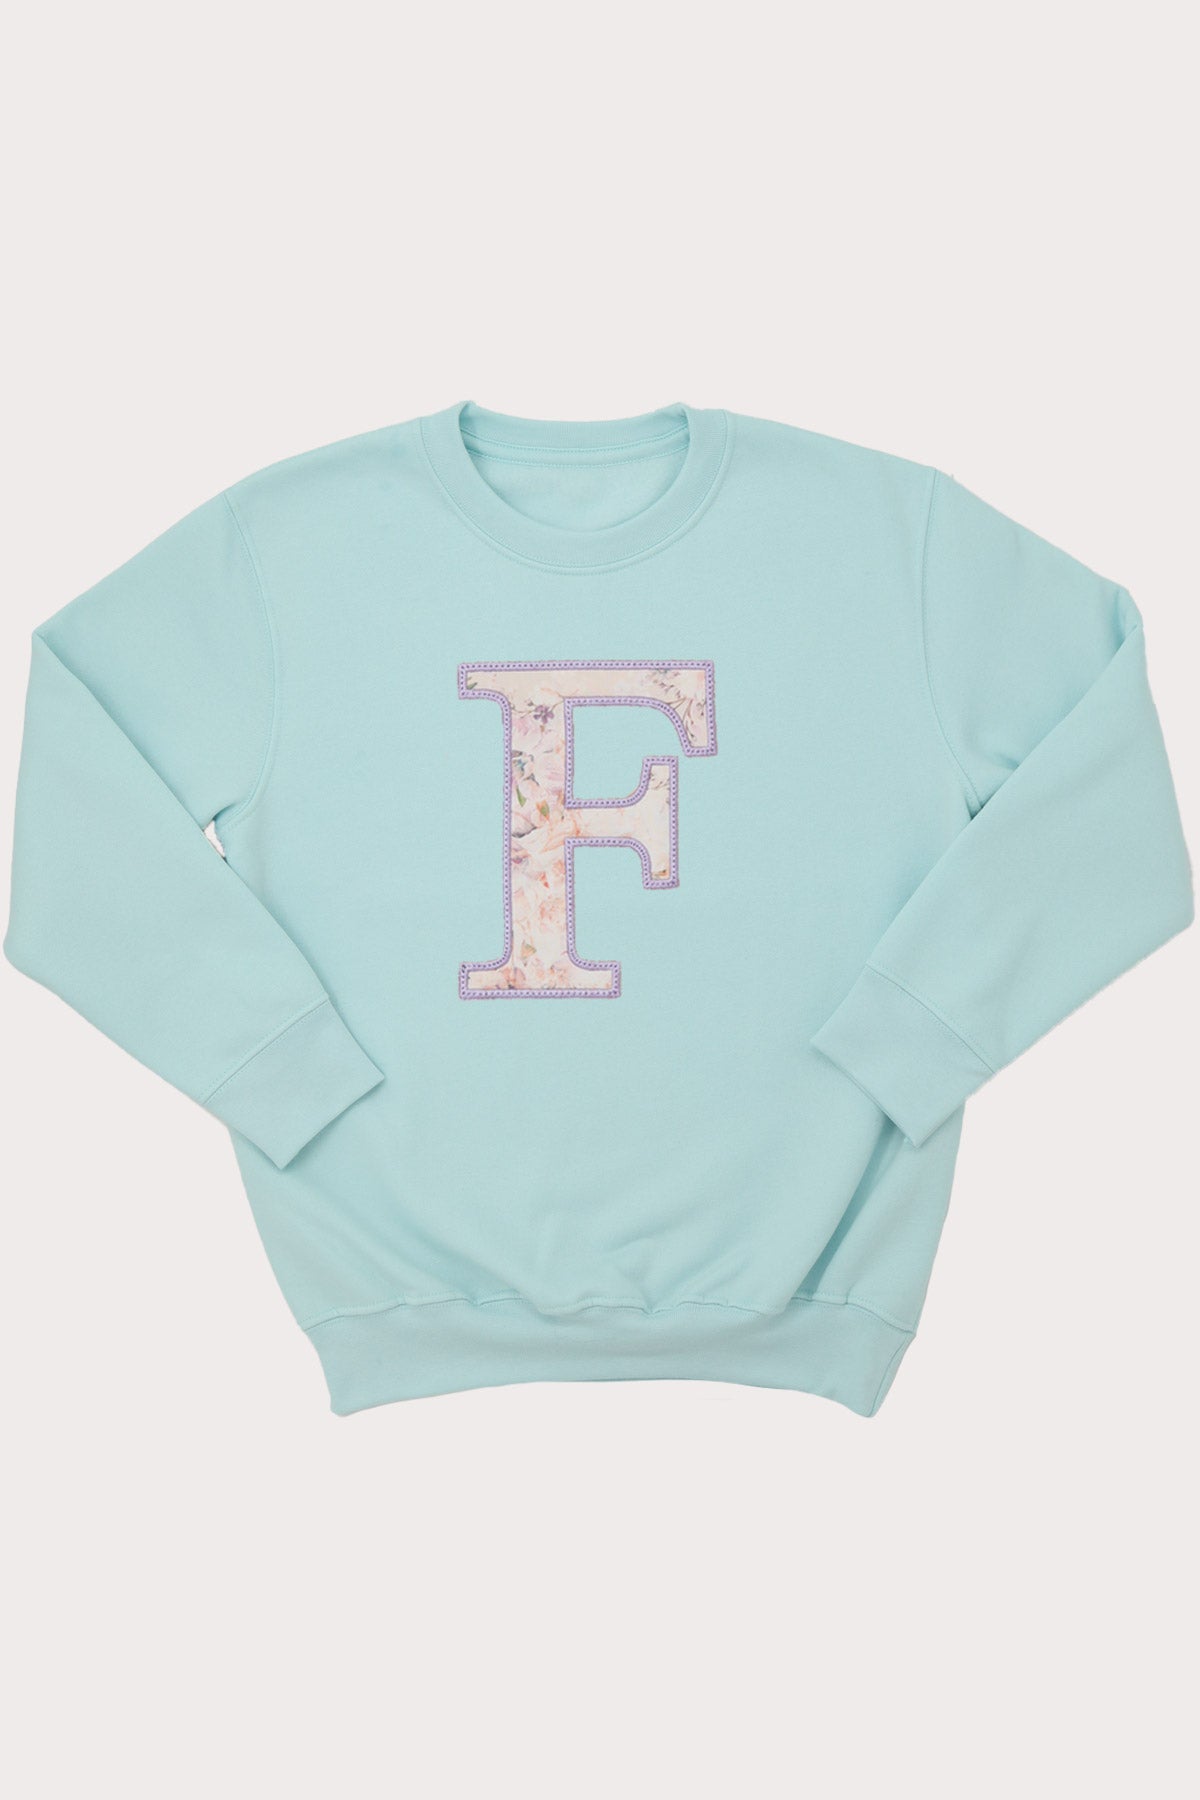 Floral Fabric Personalised Initial Sweatshirt (6M - 10Y)